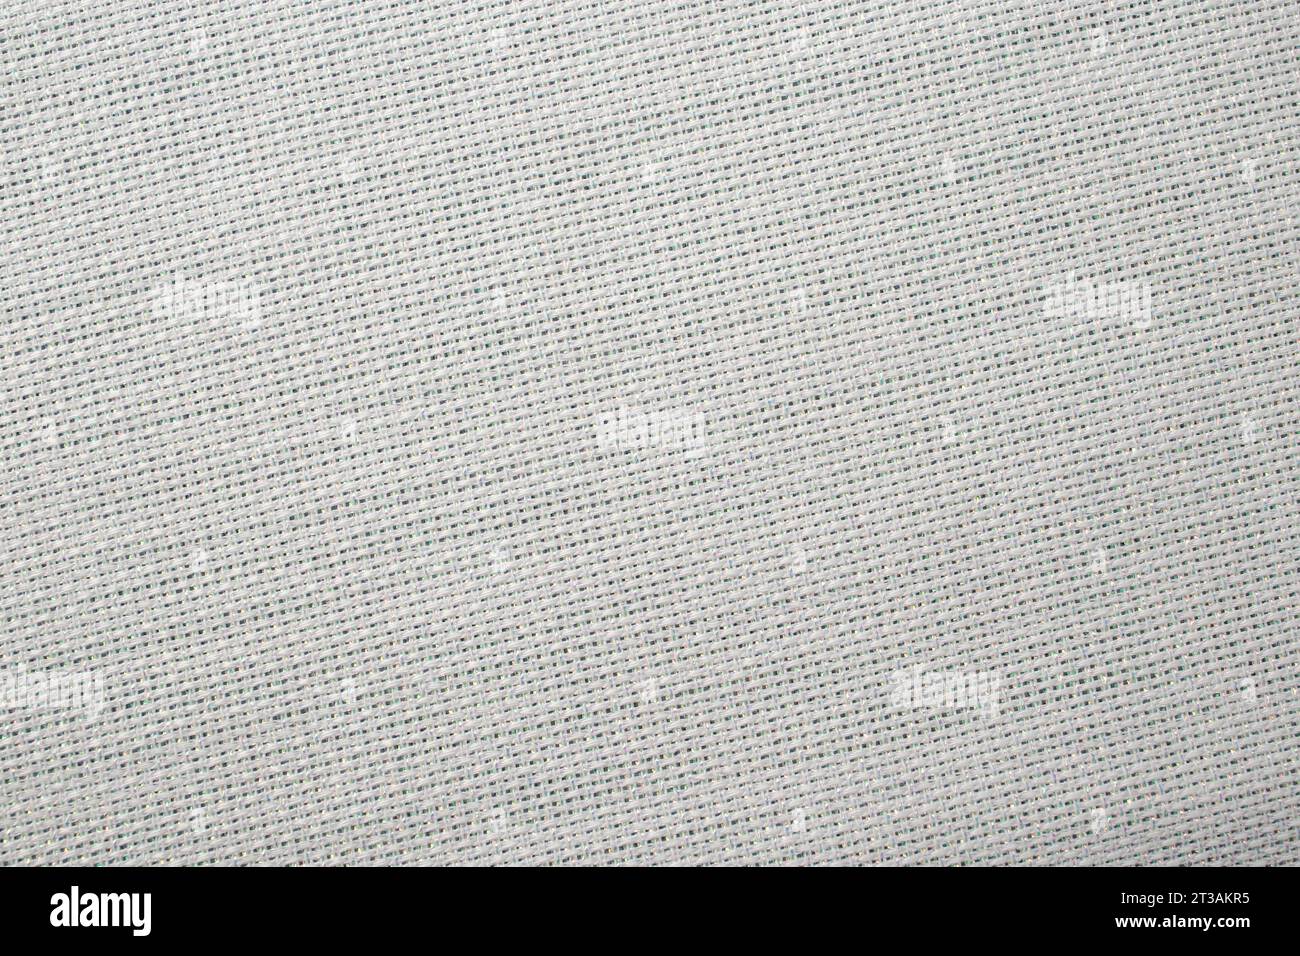 struttura in tela bianca con inserti filettati metallici, primo piano sfondo vuoto Foto Stock